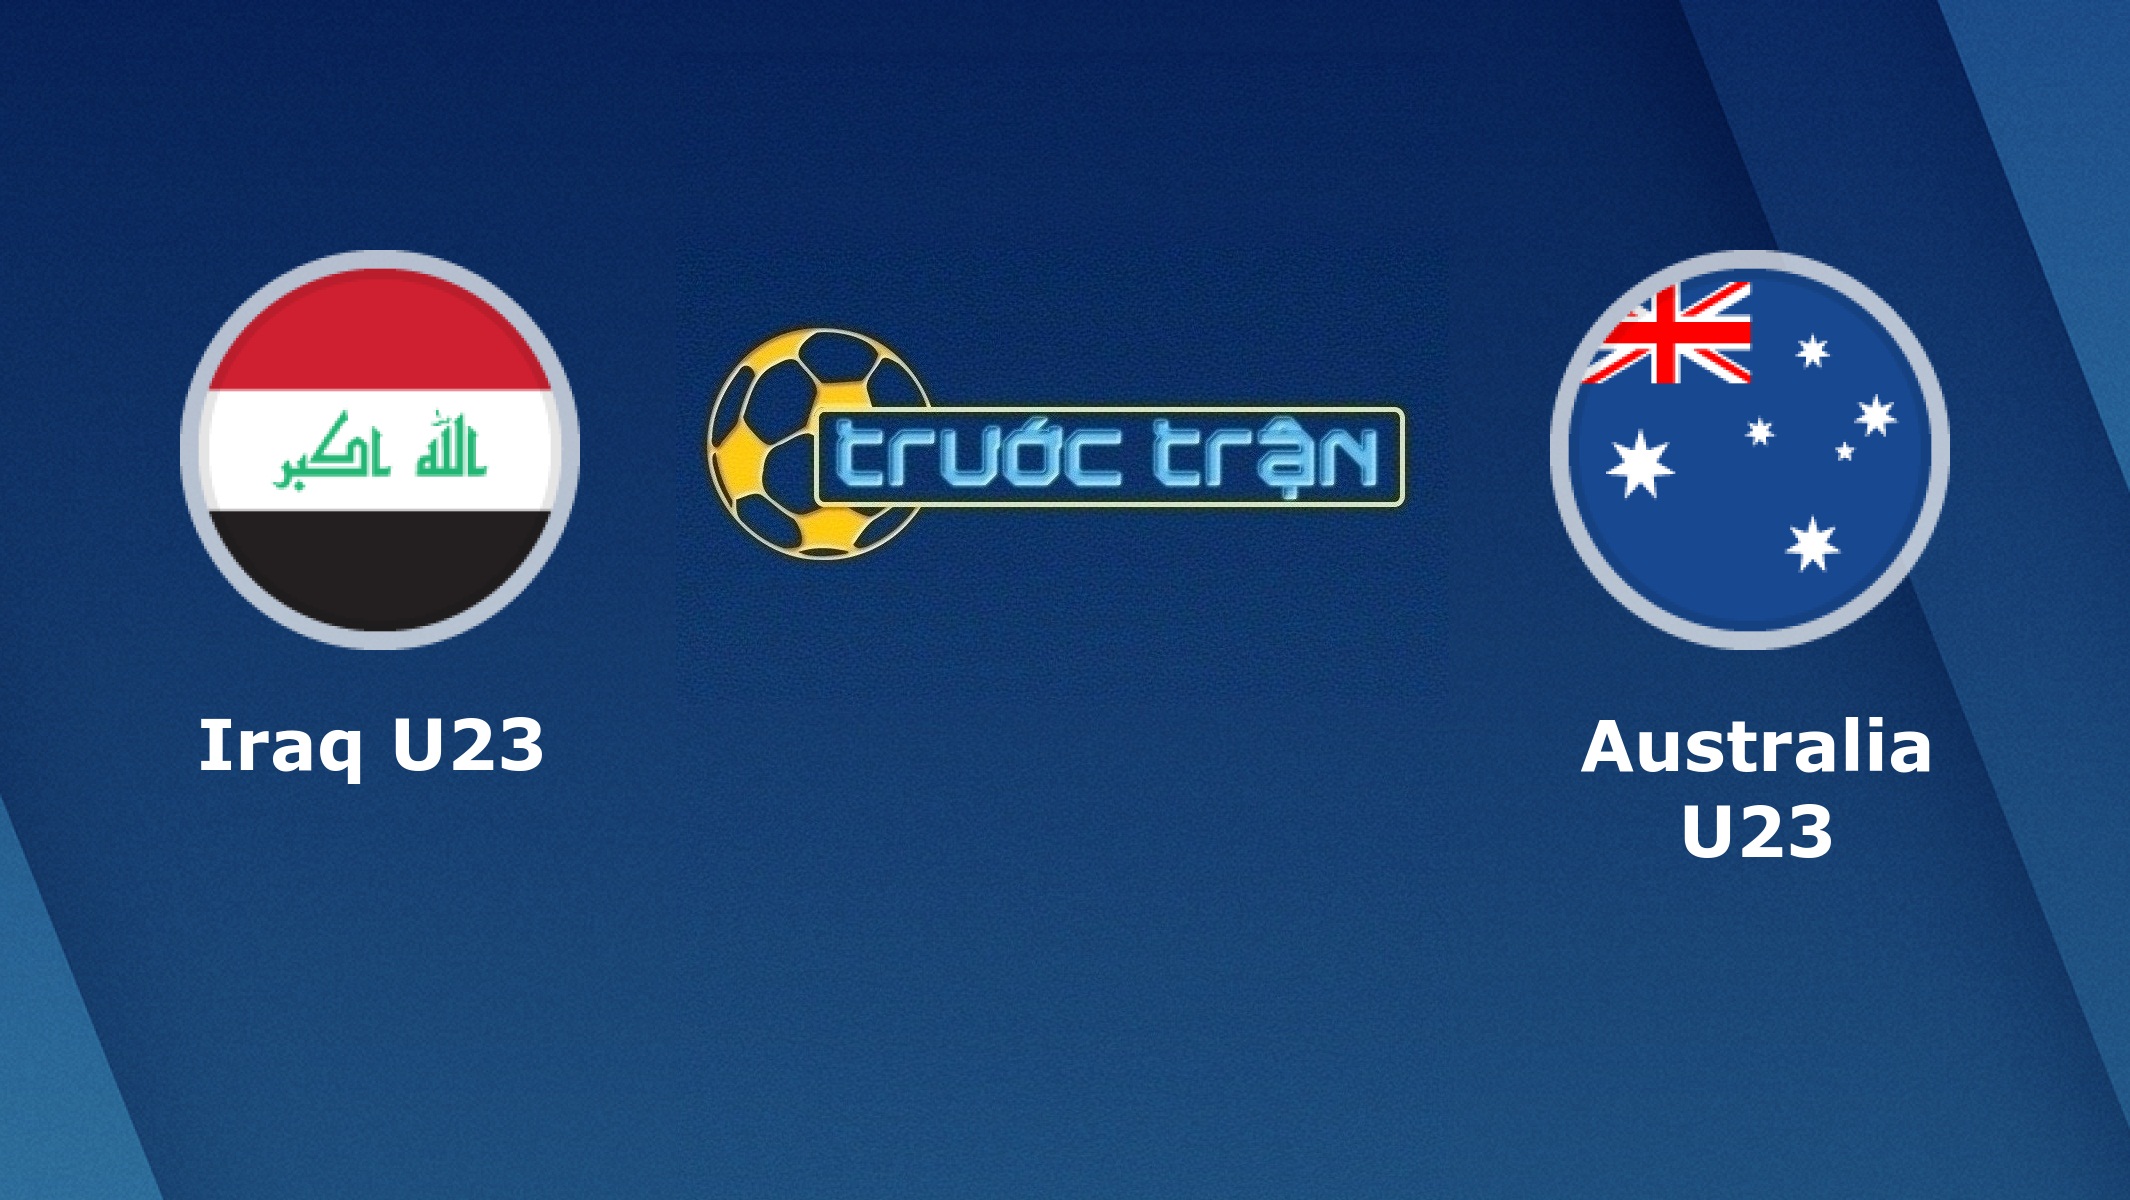 Iraq U23 vs Australia U23- Tip kèo bóng đá hôm nay – 08/01